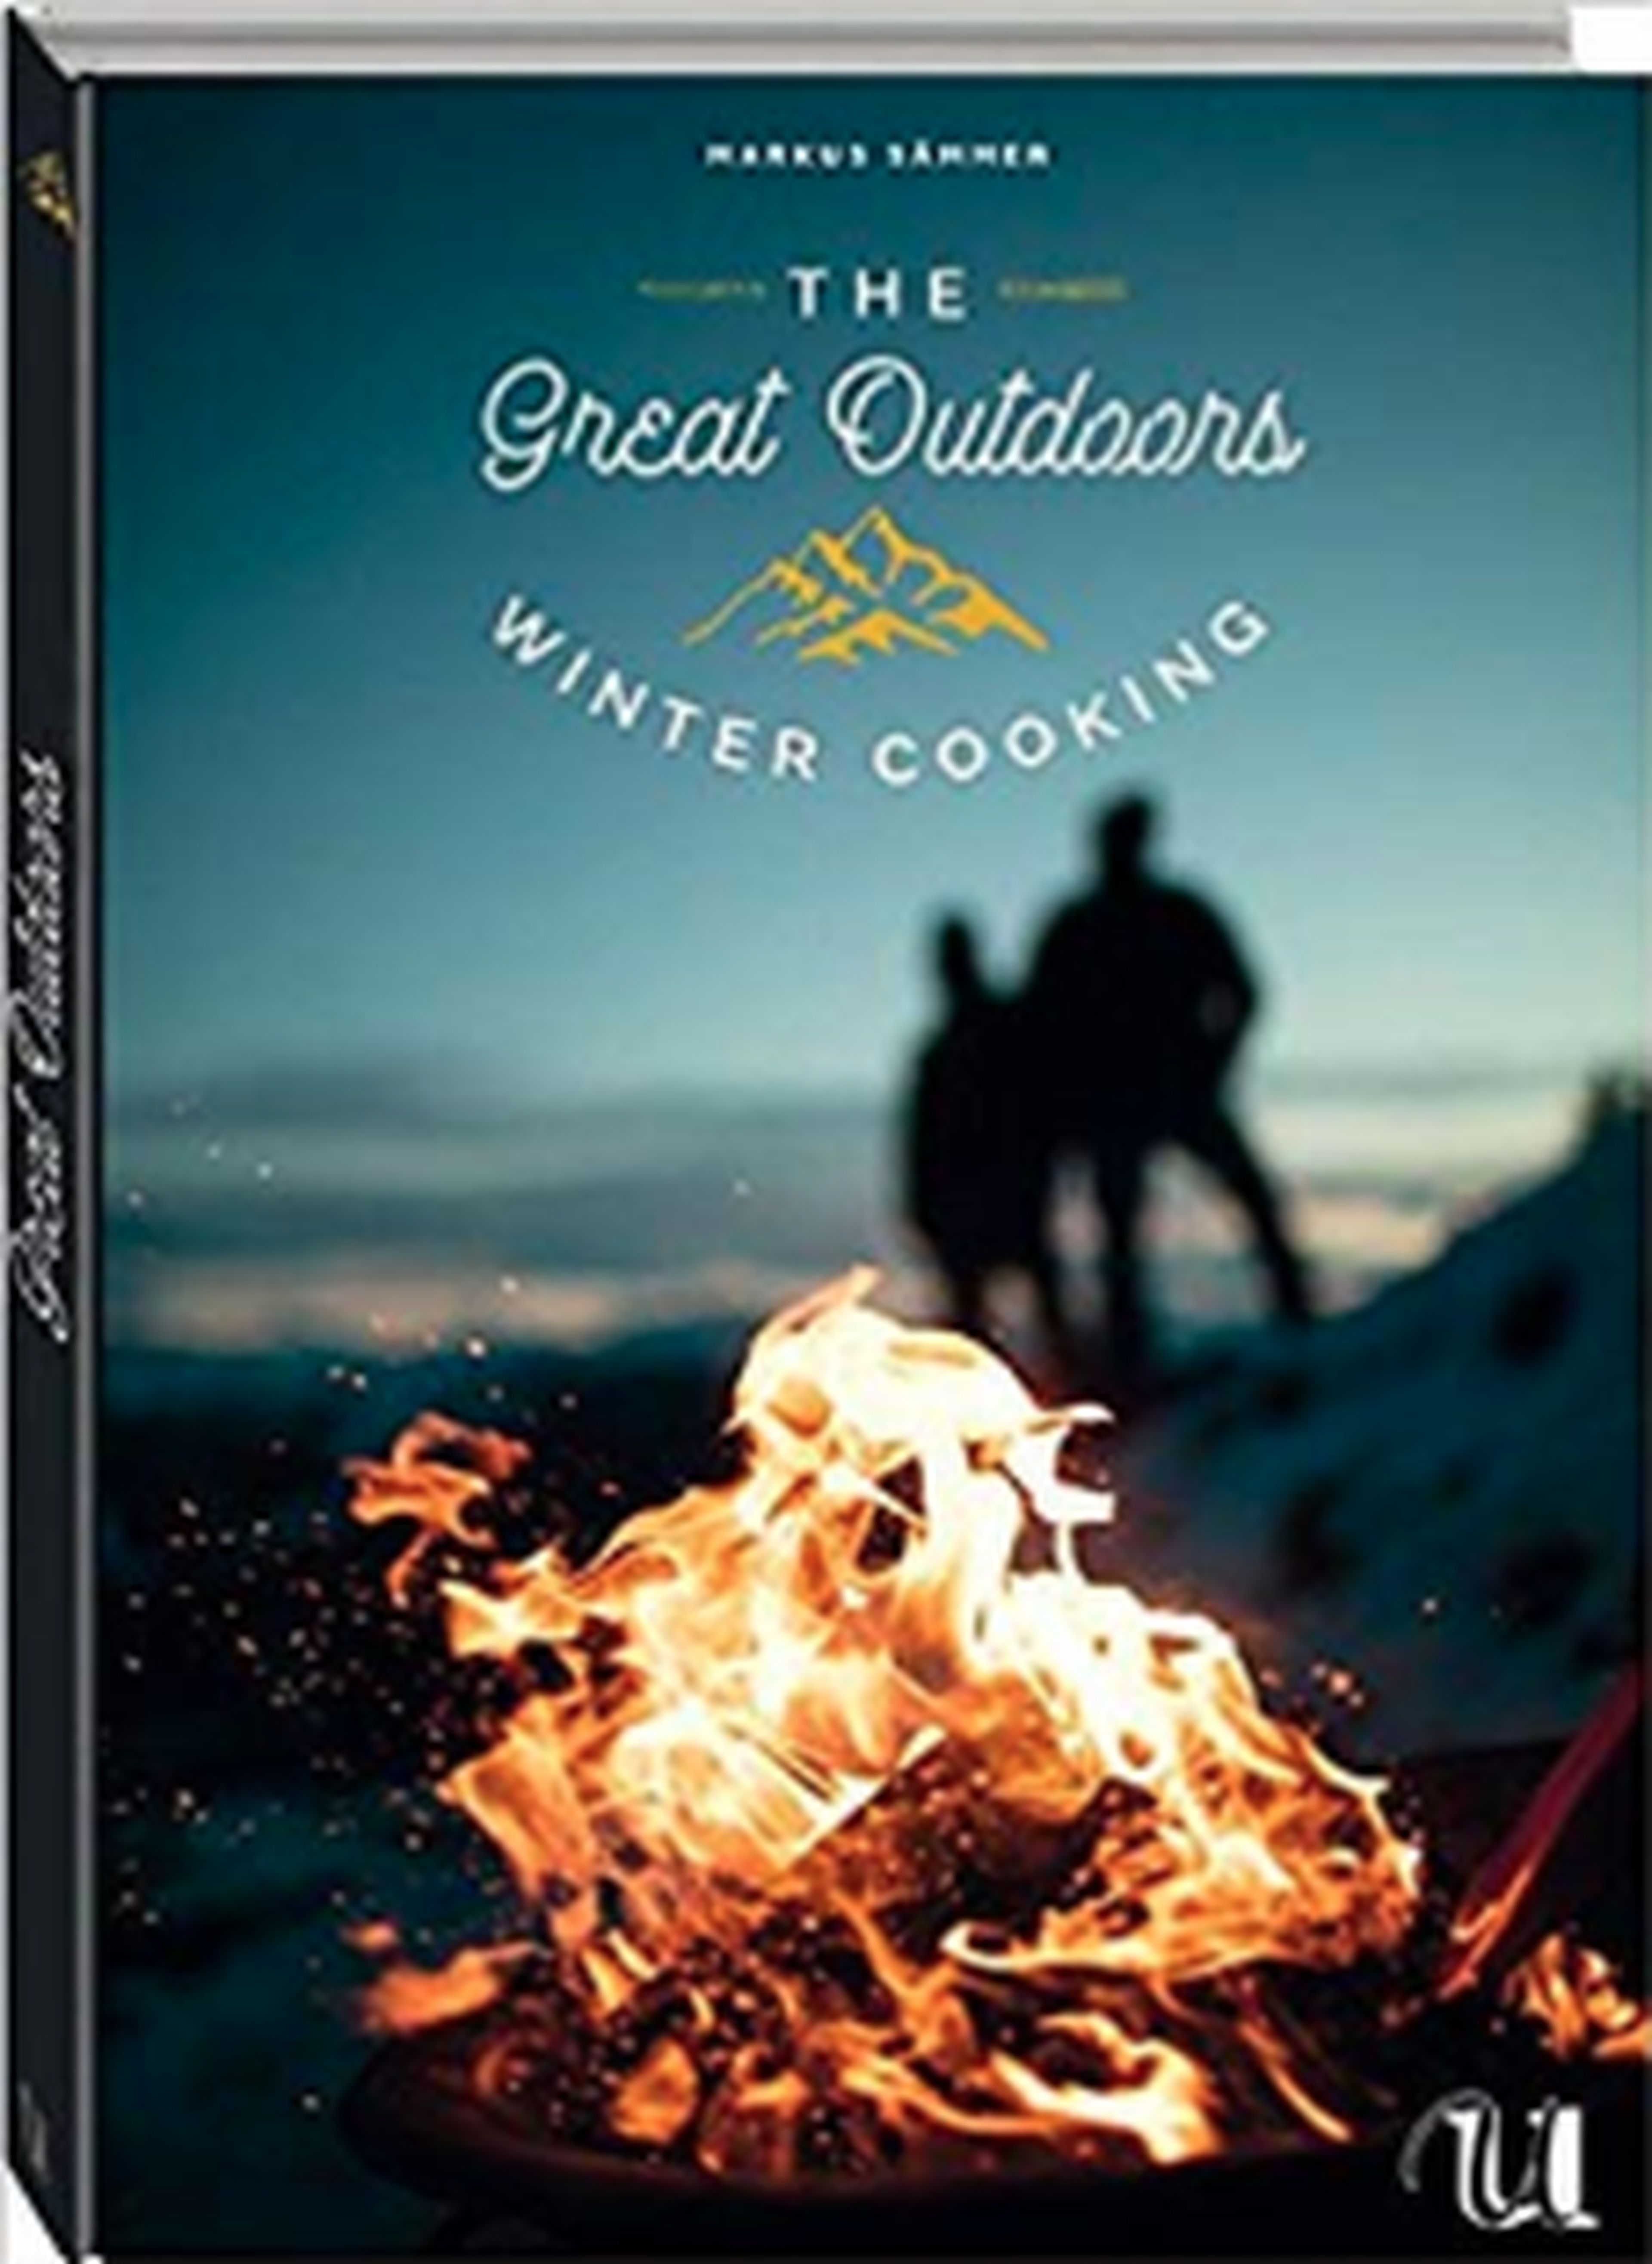 Mehr Rezeptideen für den Winter findest du im Buch “Delicious Wintertime” (erschienen im gestalten Verlag)
https://www.the-great-outdoors.de/shop/